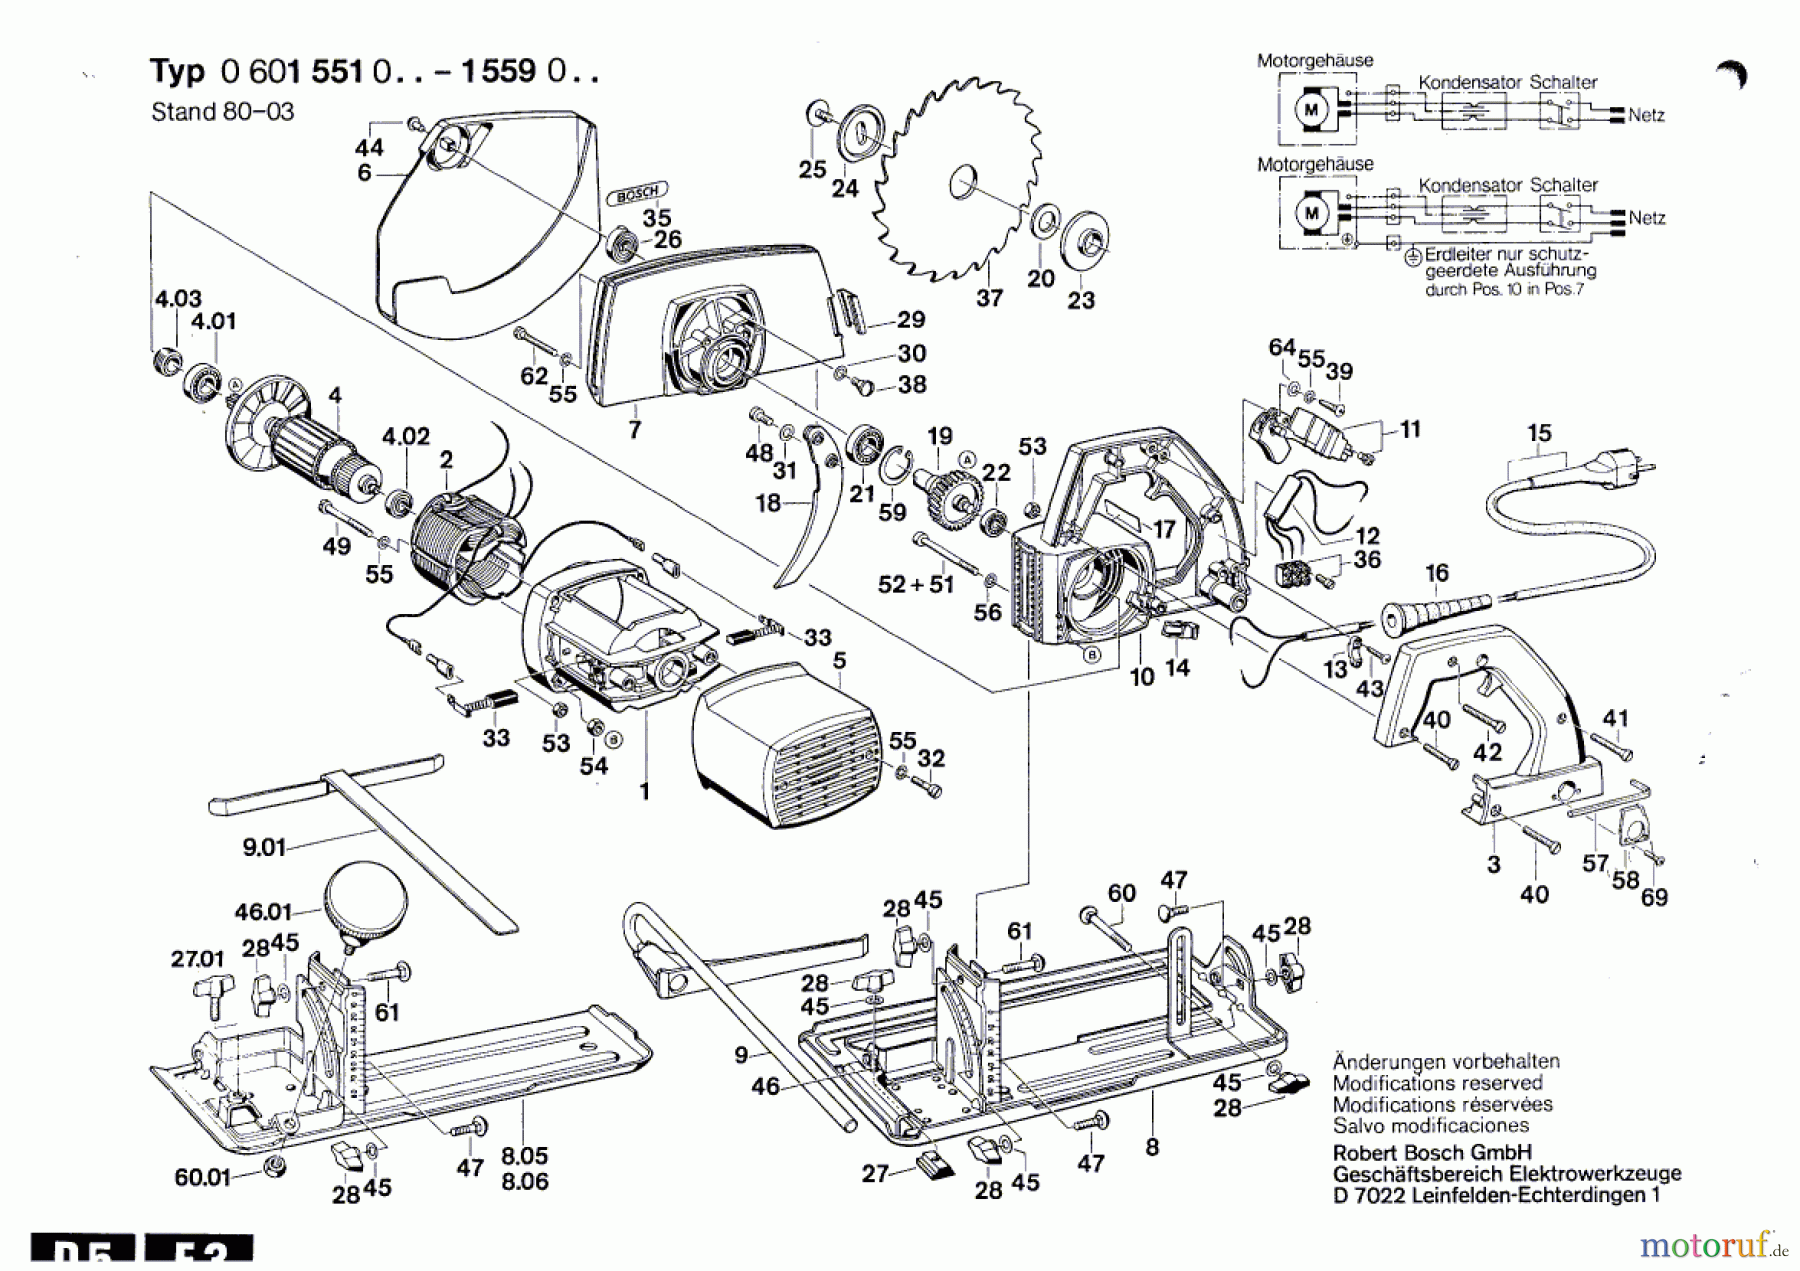  Bosch Werkzeug Handkreissäge ---- Seite 1